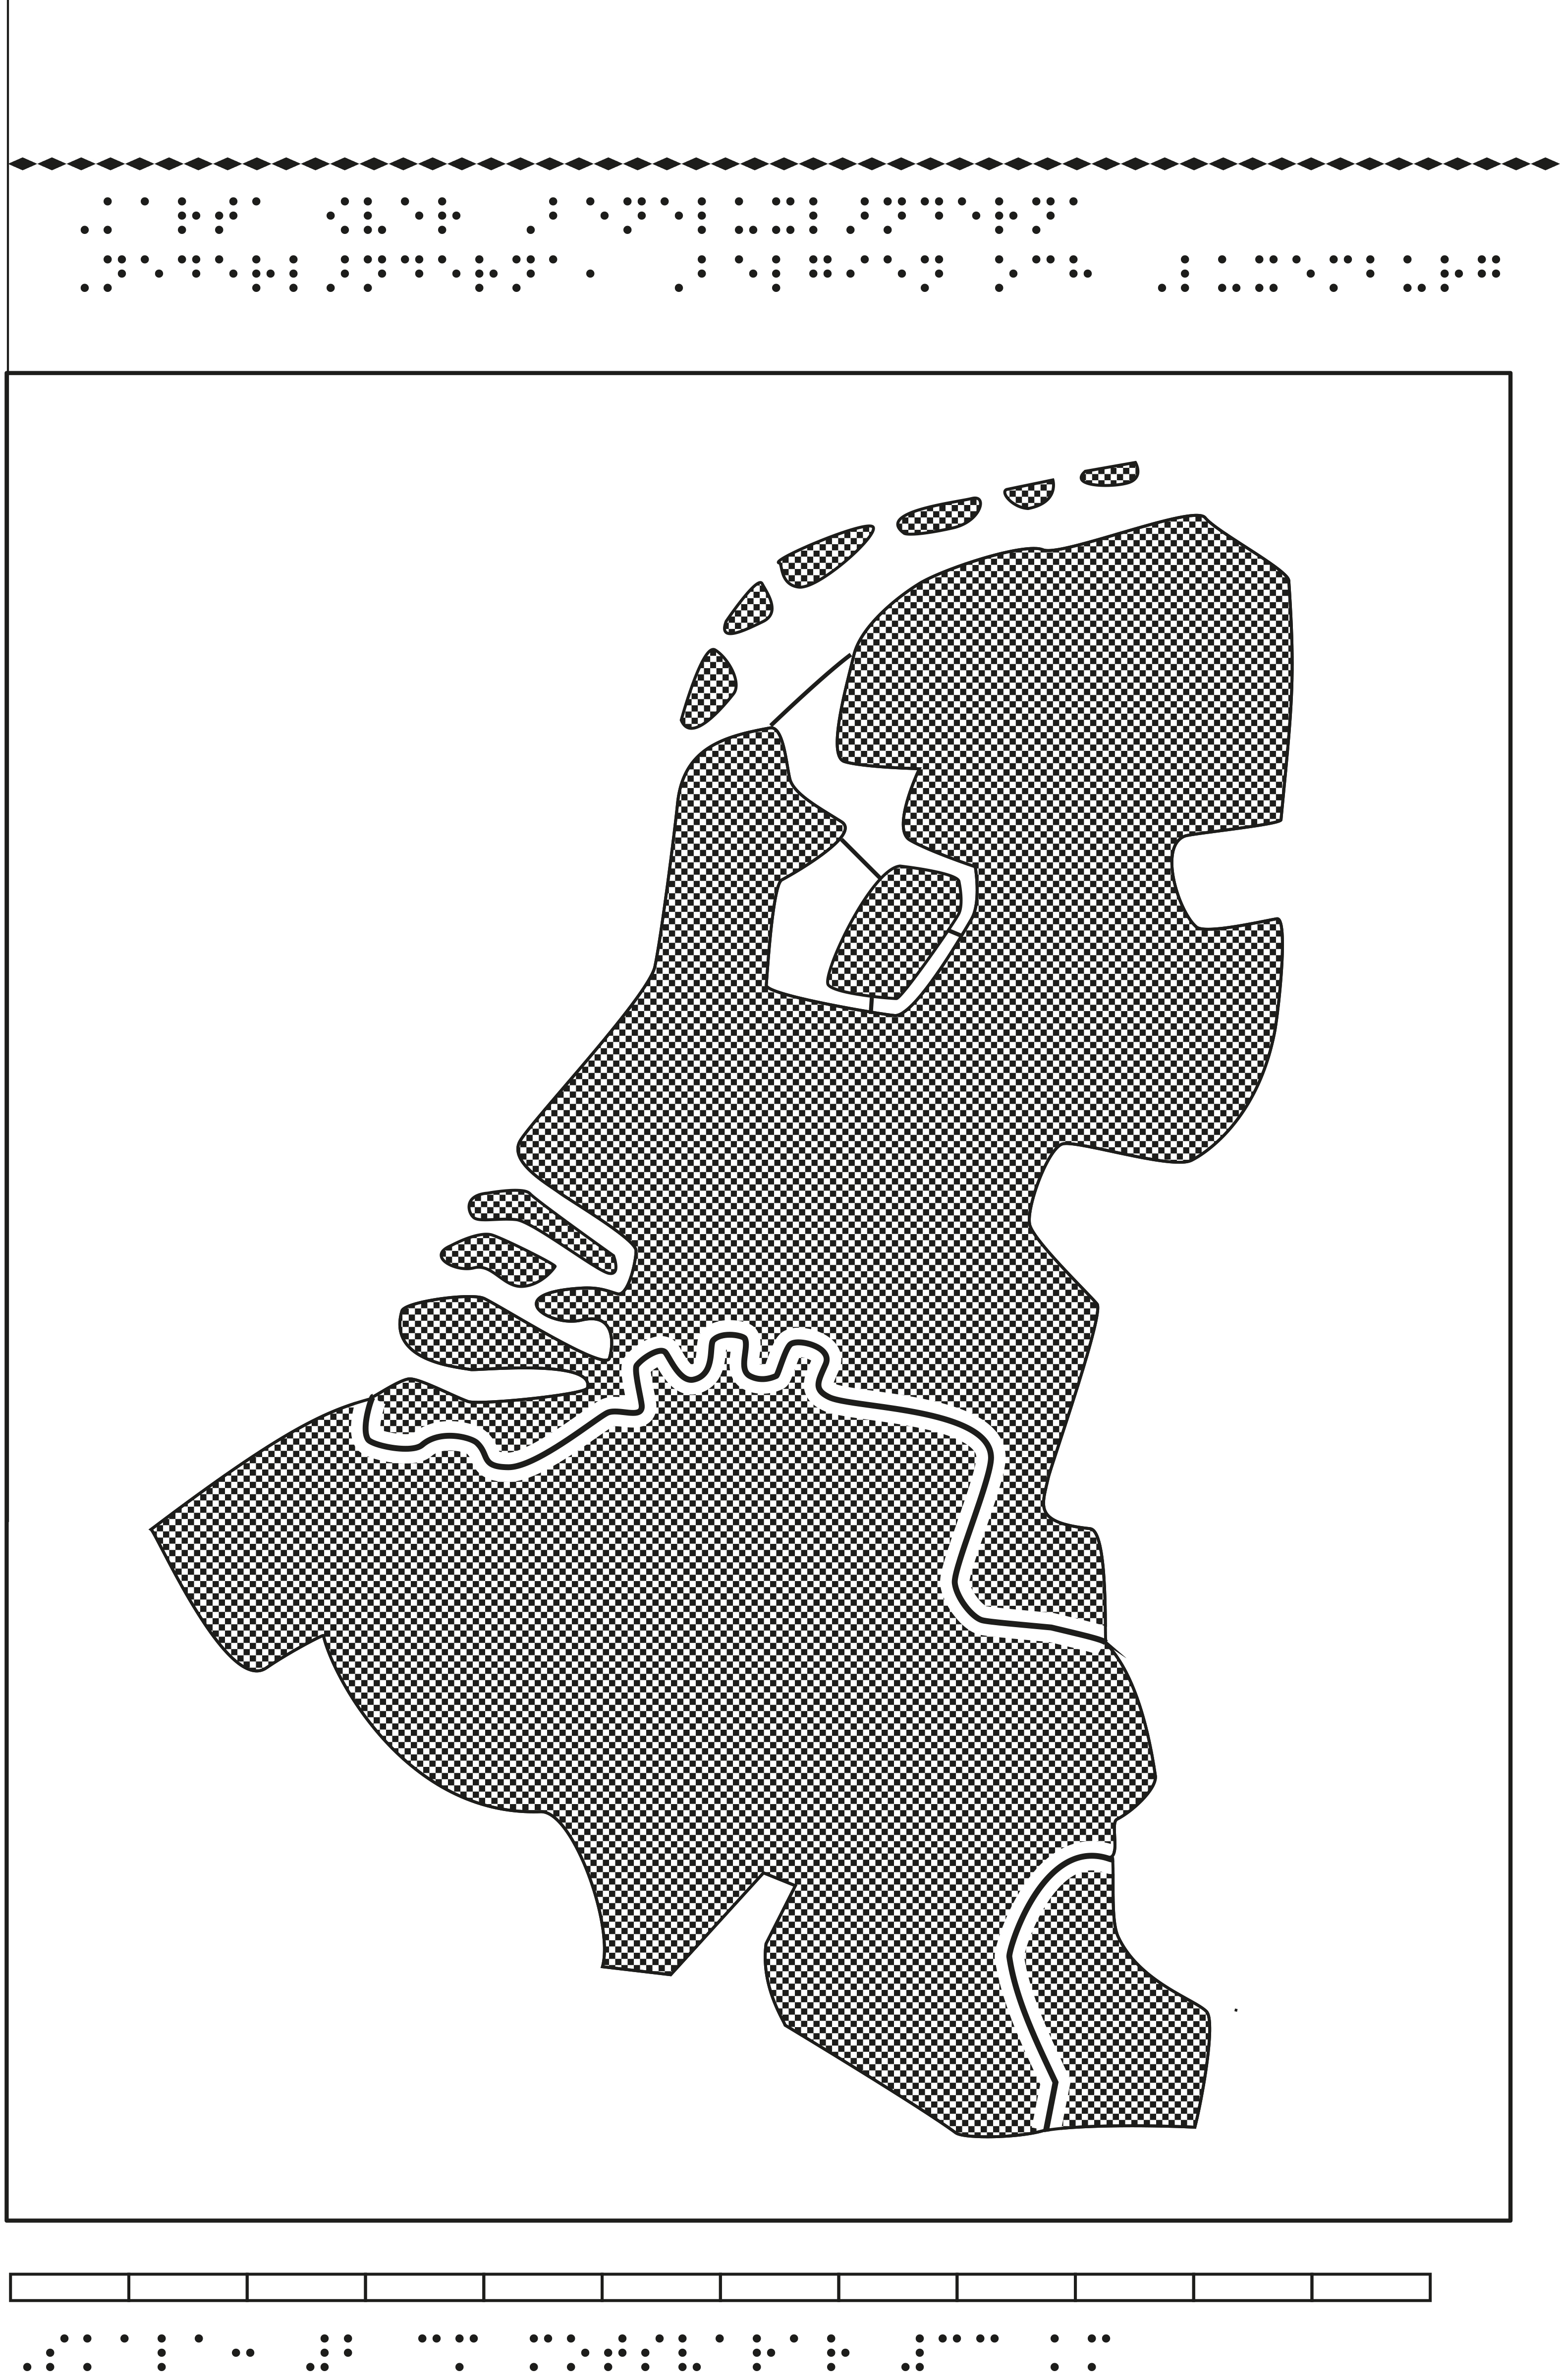 Karta av Belgien, Nederländerna, och Luxemburg i relief med tillhörande punktskrift.